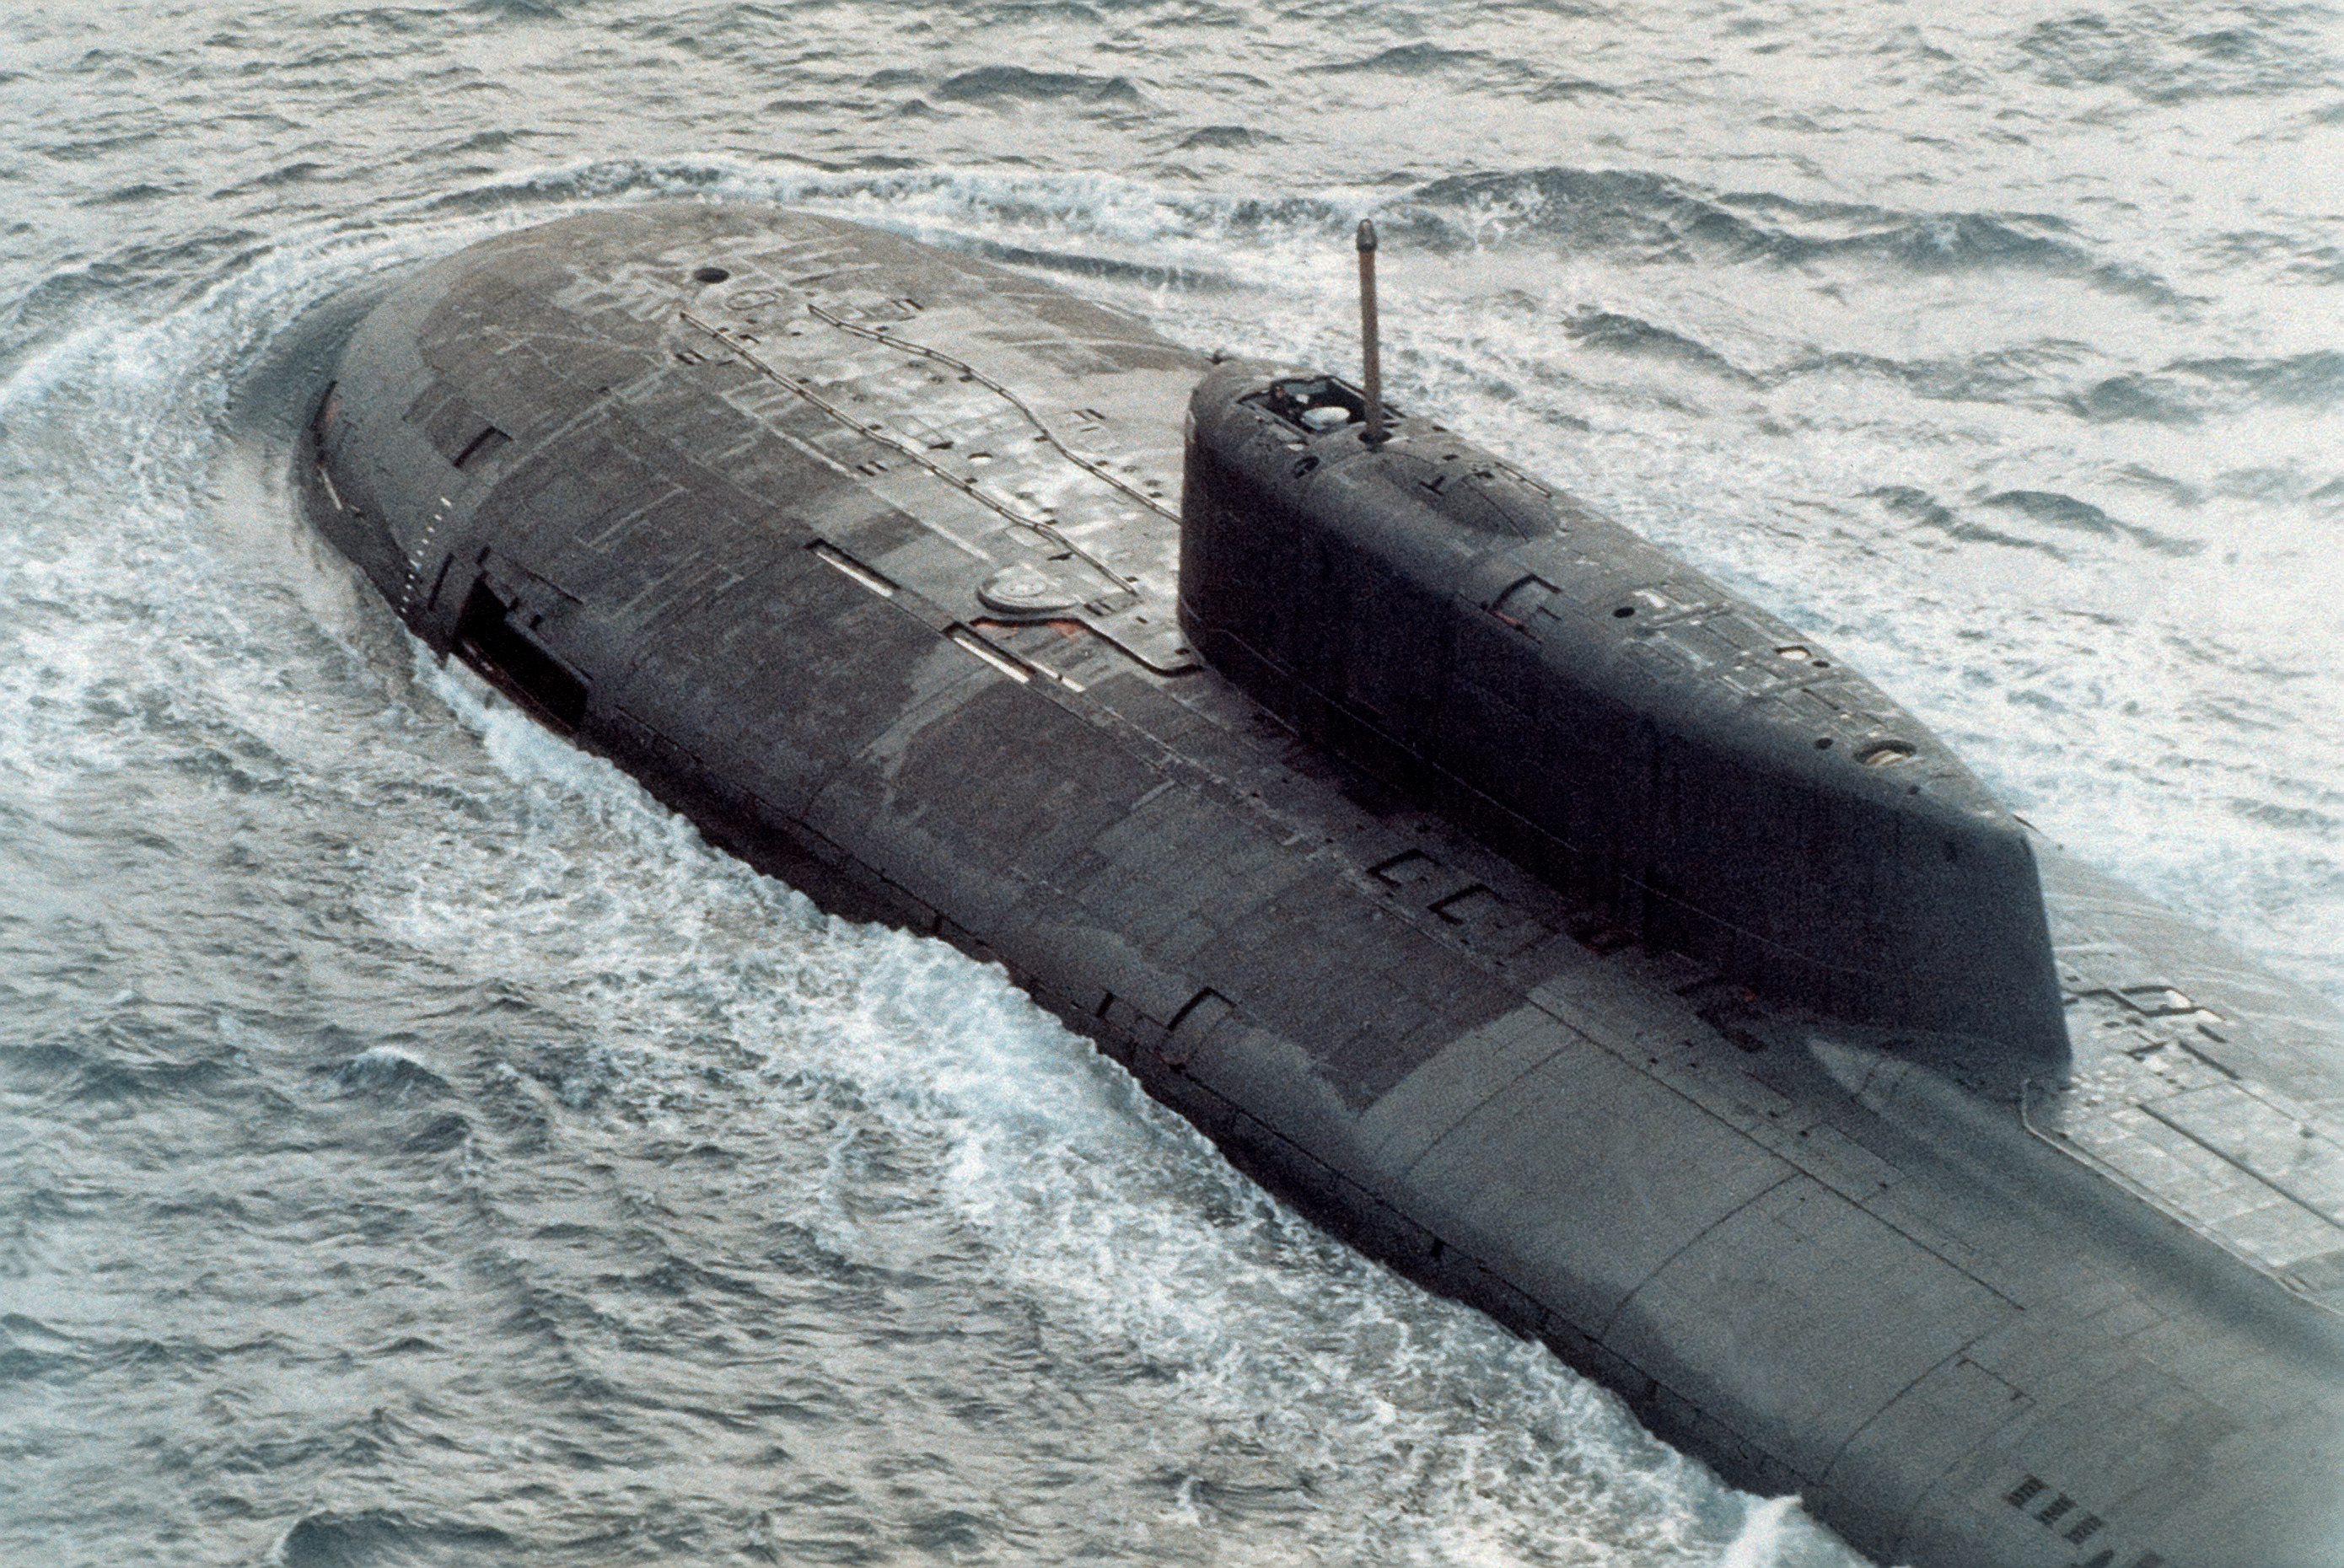 中国最大核潜艇叫什么_中国 宋级潜艇 元级潜艇 取代_潜艇密航大作战 豆瓣